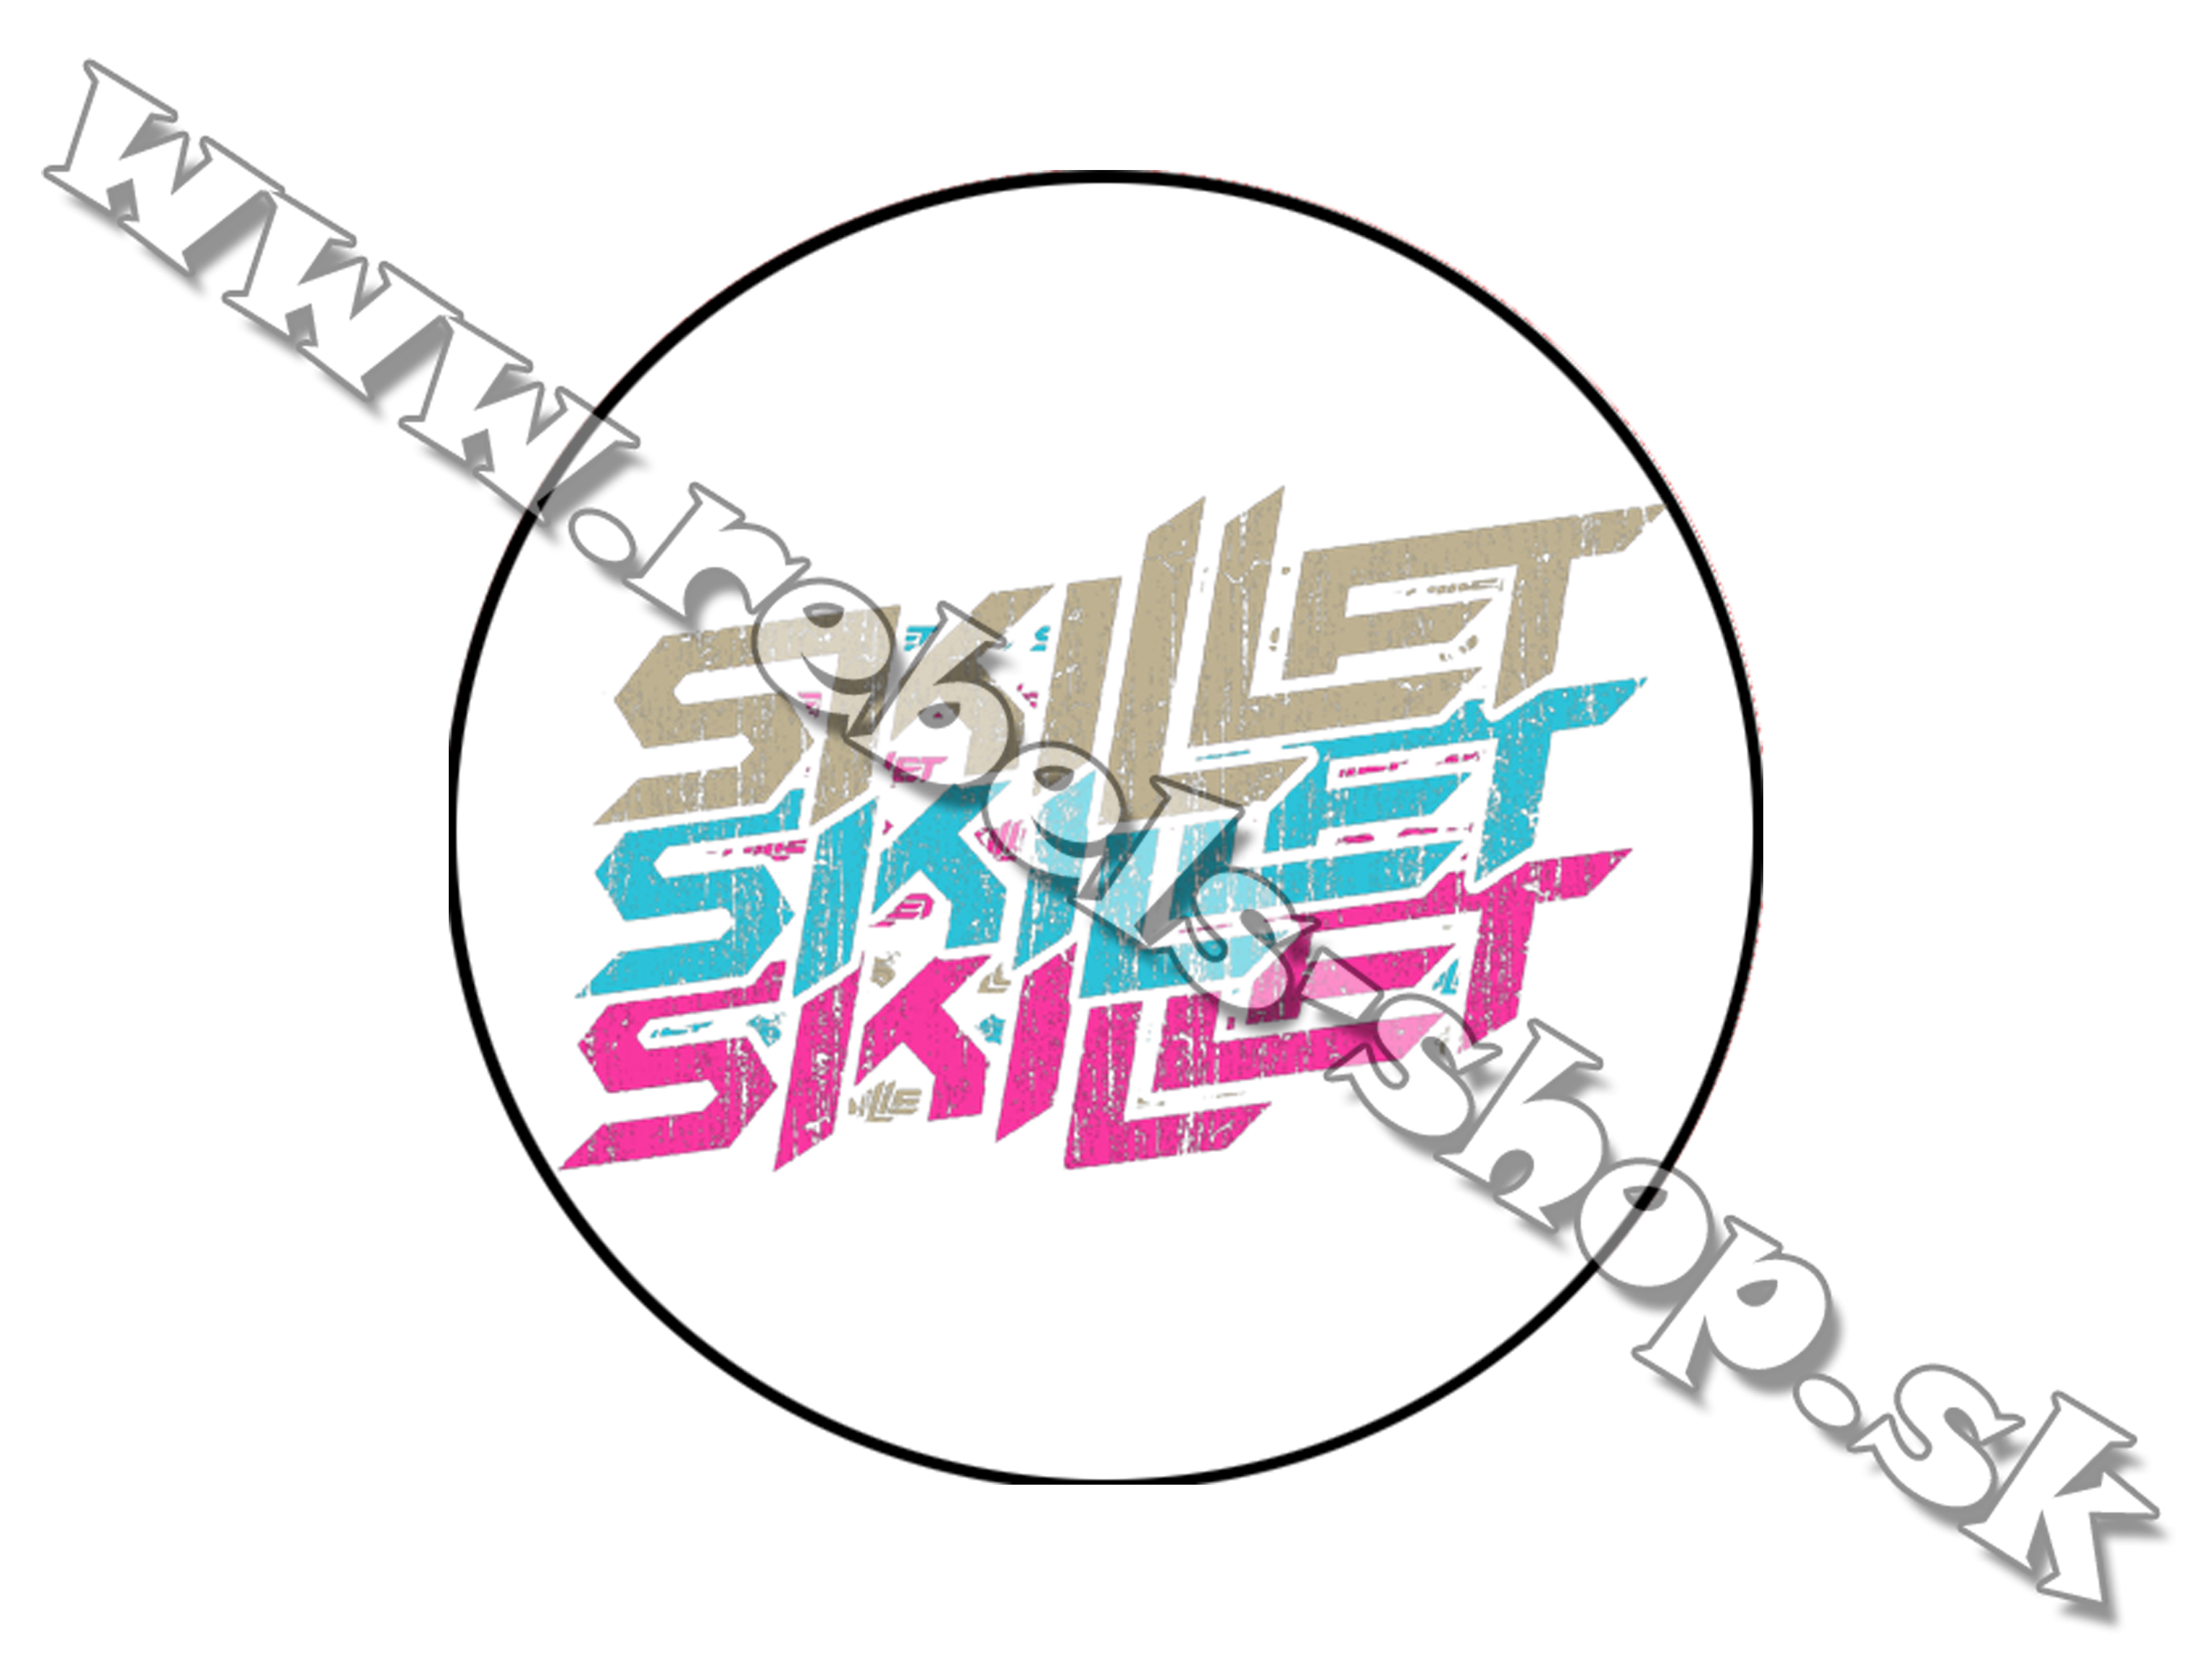 Odznak "Skillet"